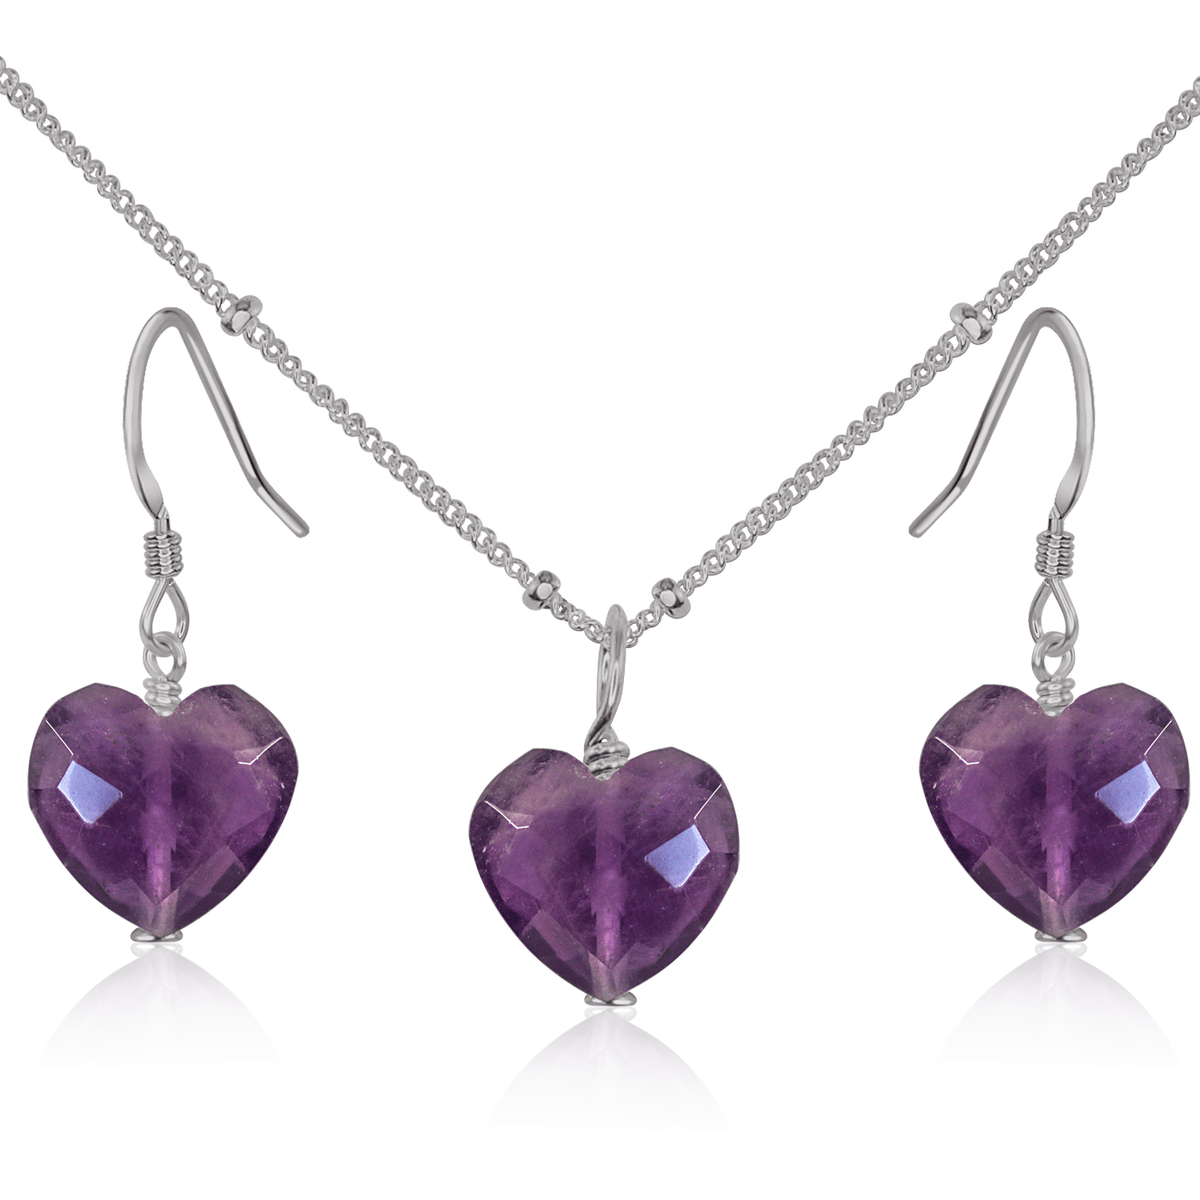 Amethyst Crystal Heart Jewellery Set - Amethyst Crystal Heart Jewellery Set - Stainless Steel / Satellite / Necklace & Earrings - Luna Tide Handmade Crystal Jewellery